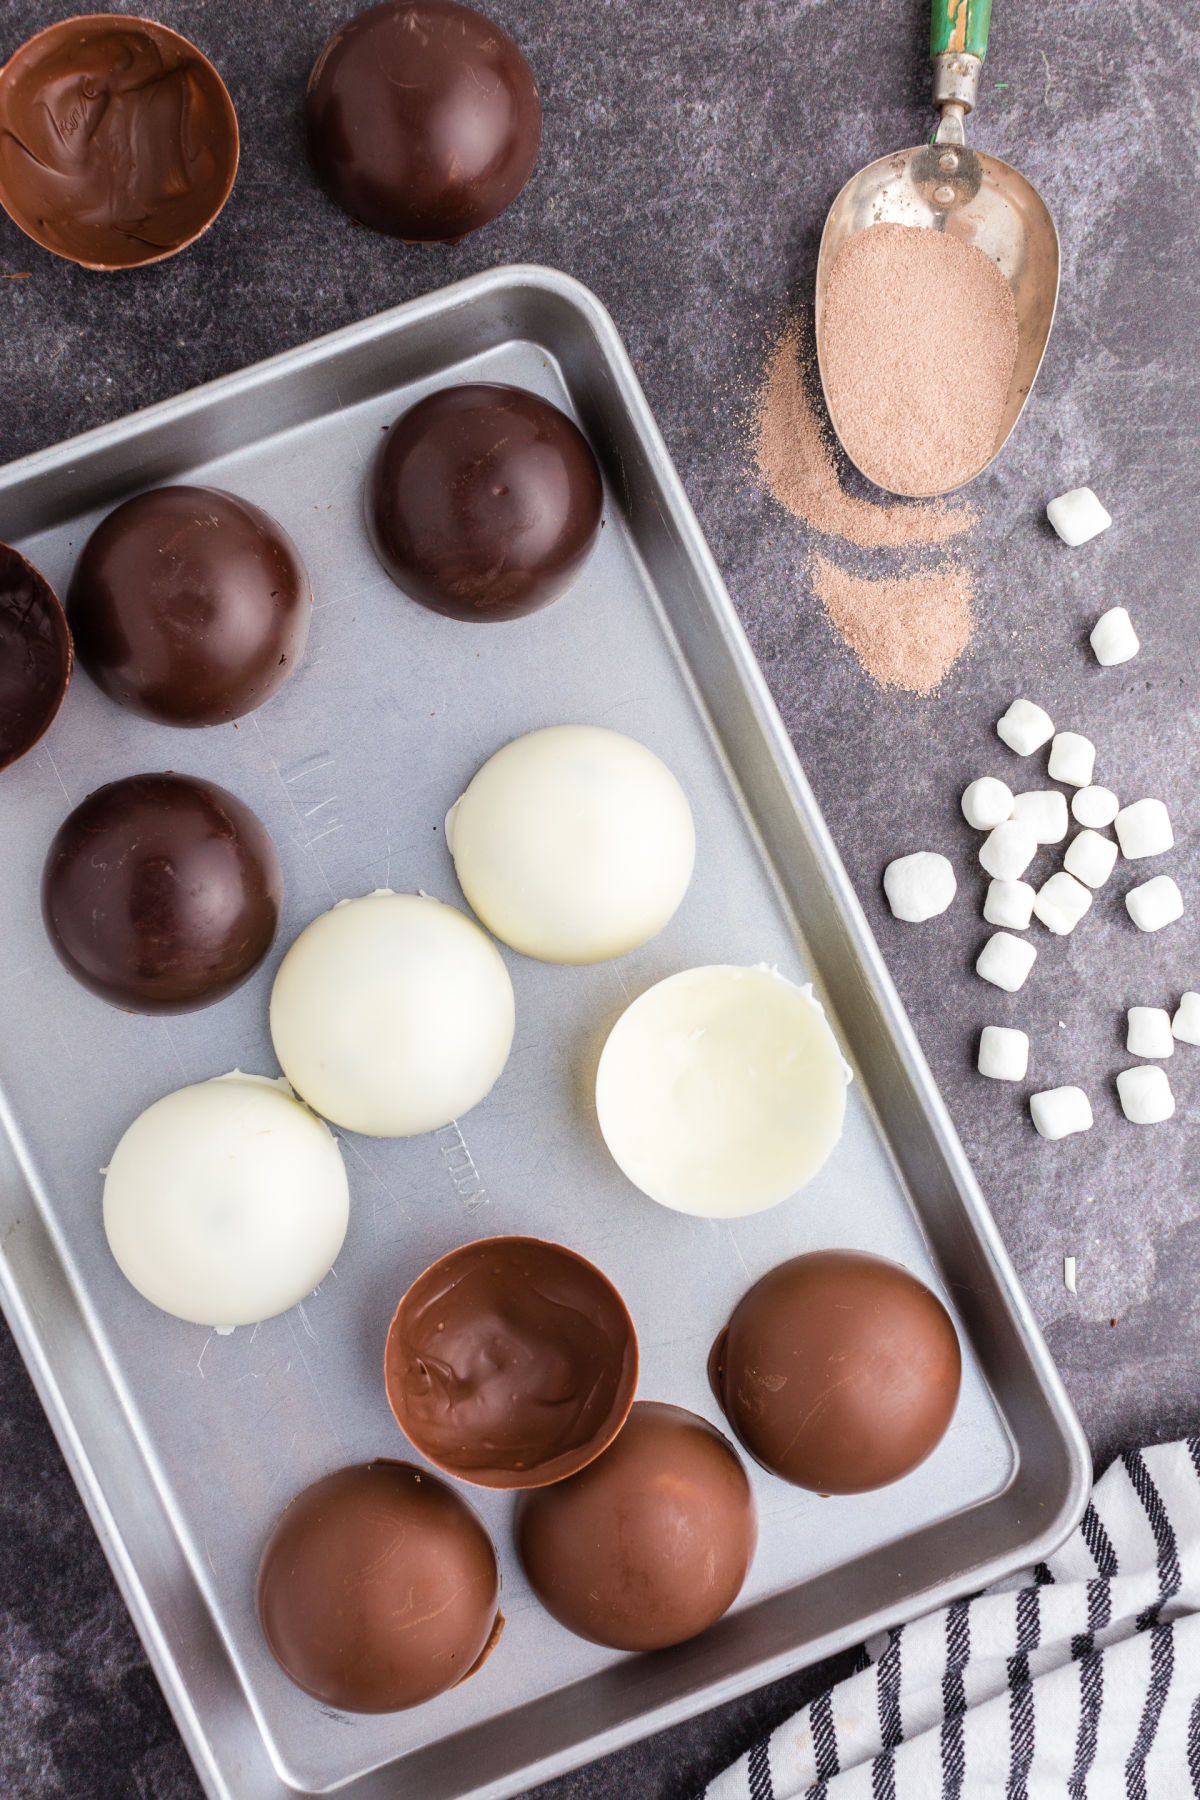 Sheet pan with dark chocolate, white chocolate, and milk chocolate hot chocolate bomb shells.